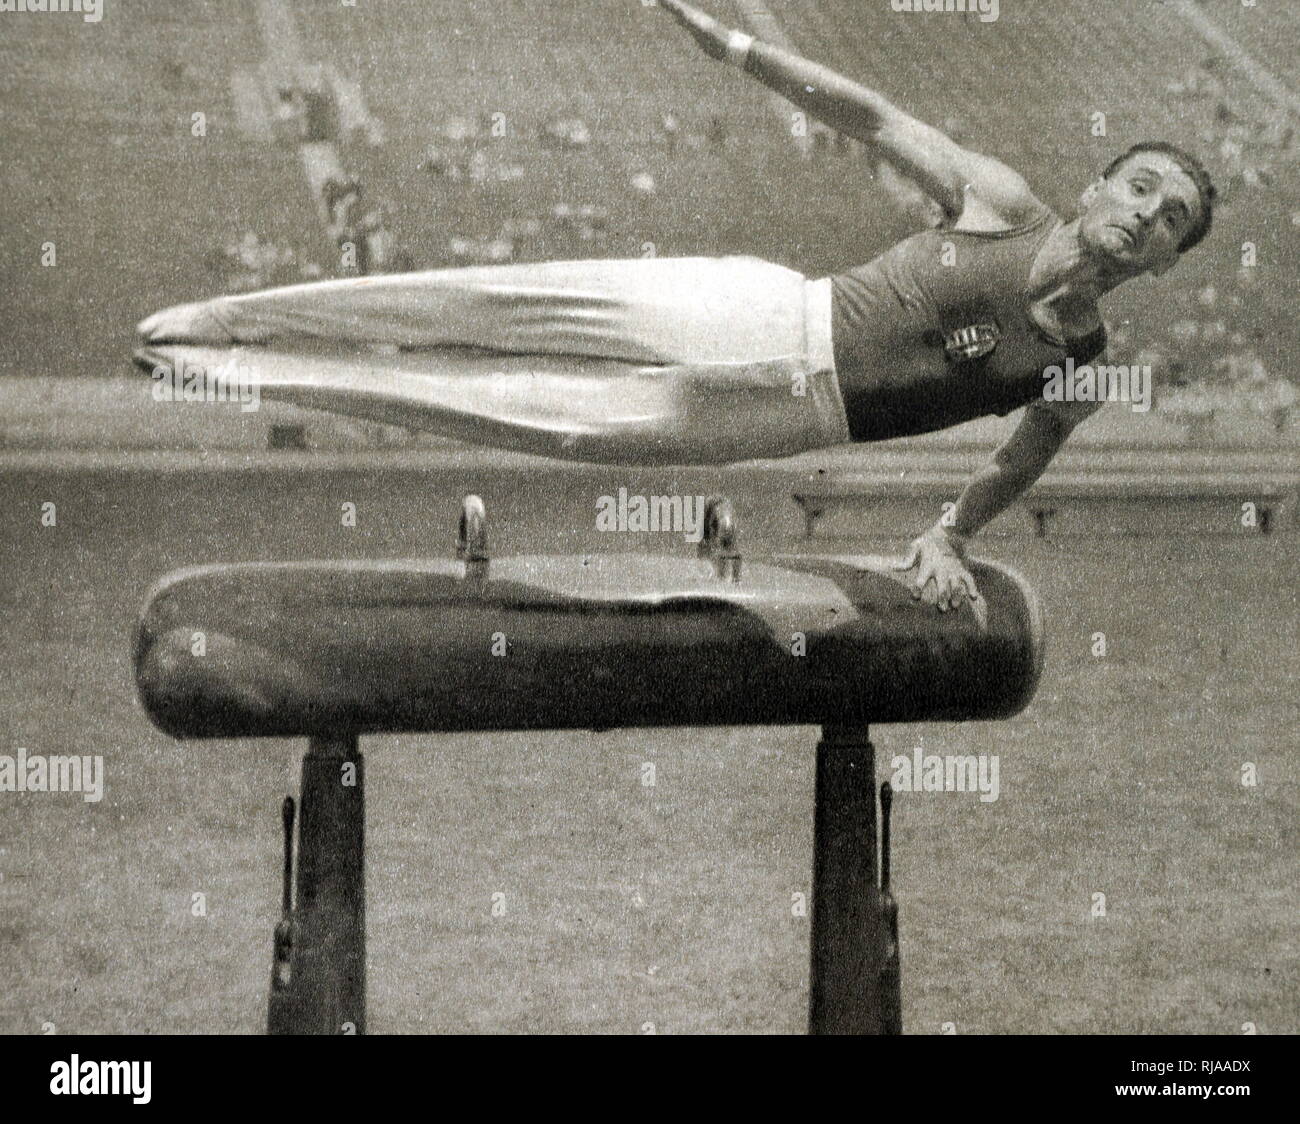 Foto von Istvan Pelle (1907 - 1986) im Jahr 1932 Olympische Spiele. Stockfoto